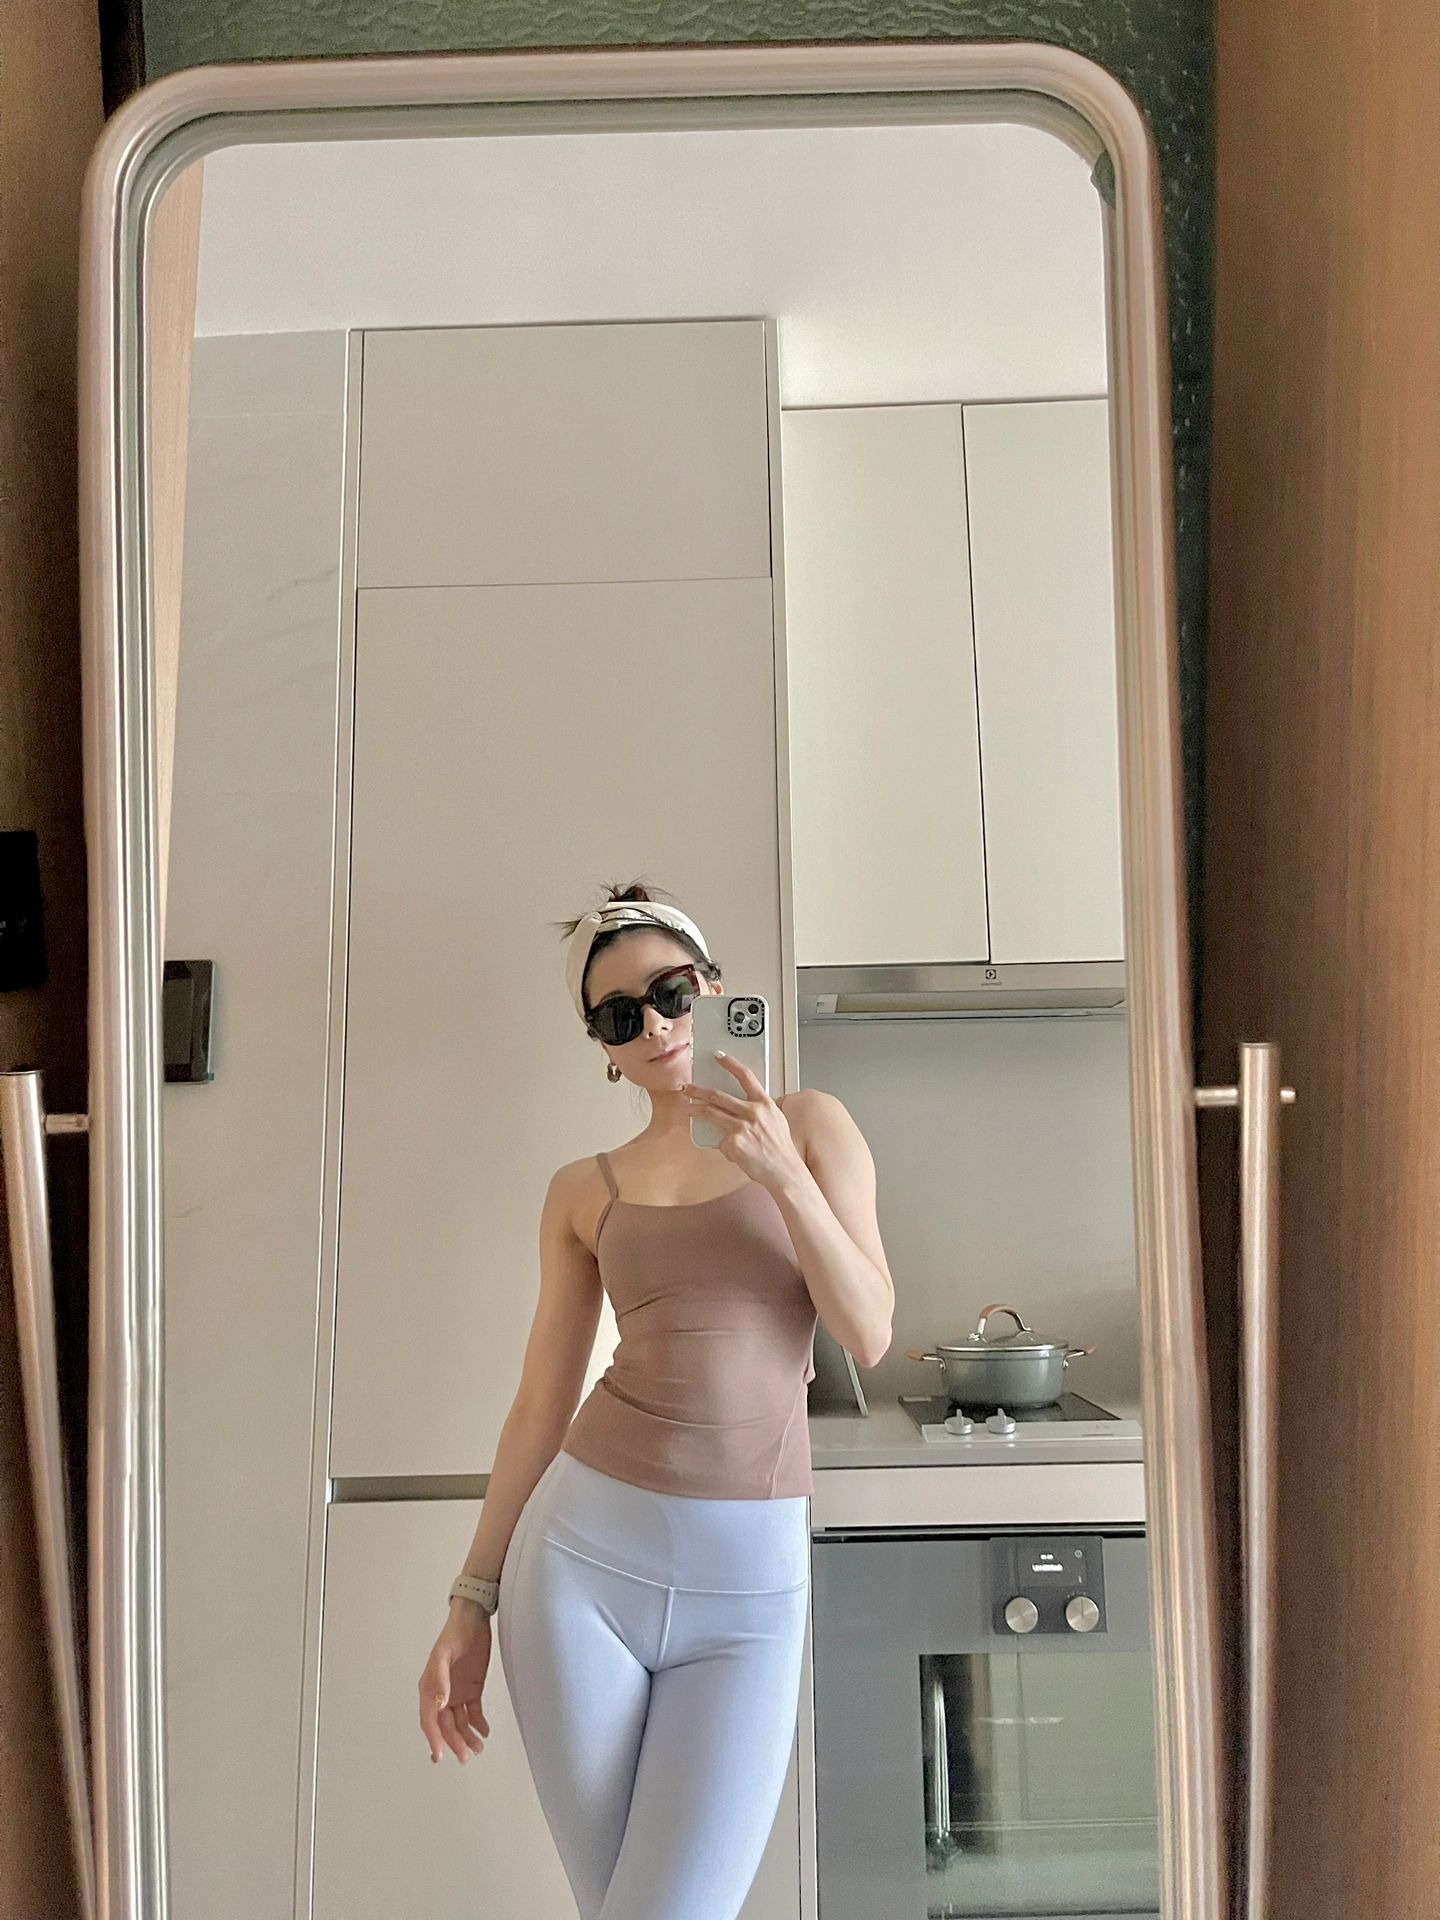 Lulu Yoga Clothes Cross Underwear Nude Feel Slim Fit Inner Wear Sports Vest Sexy Back Cross Strap New